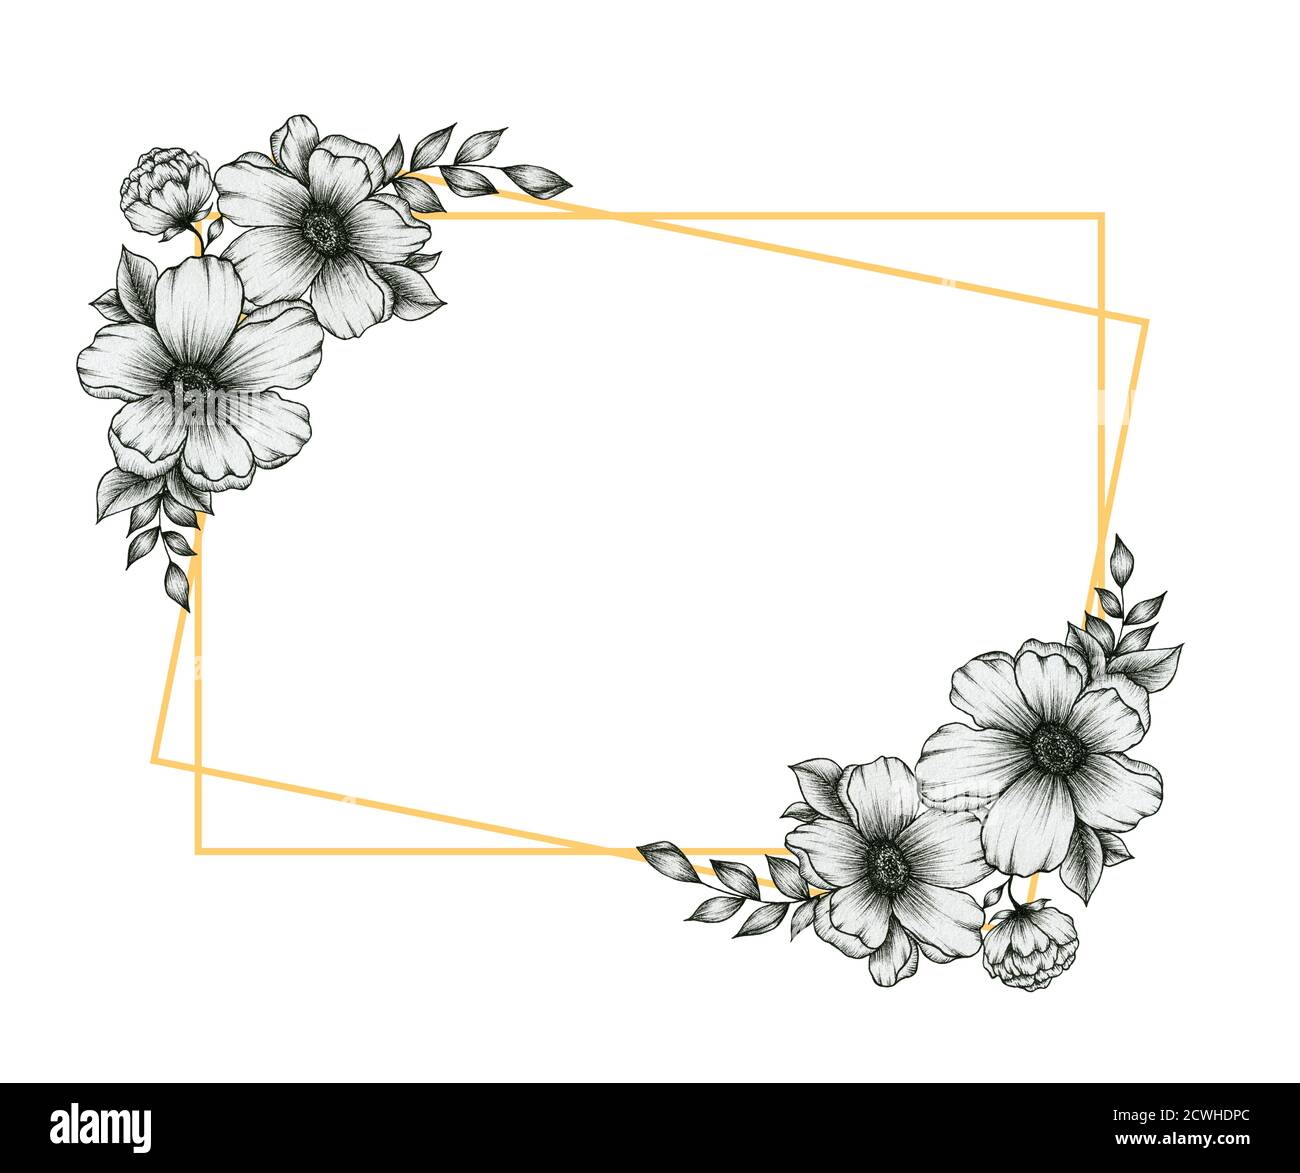 marco festivo dorado con flores blancas y negras adornos bouquet, diseño de  arte de línea floral de otoño, diseño otoñal vintage para las vacaciones de  acción de gracias Fotografía de stock -